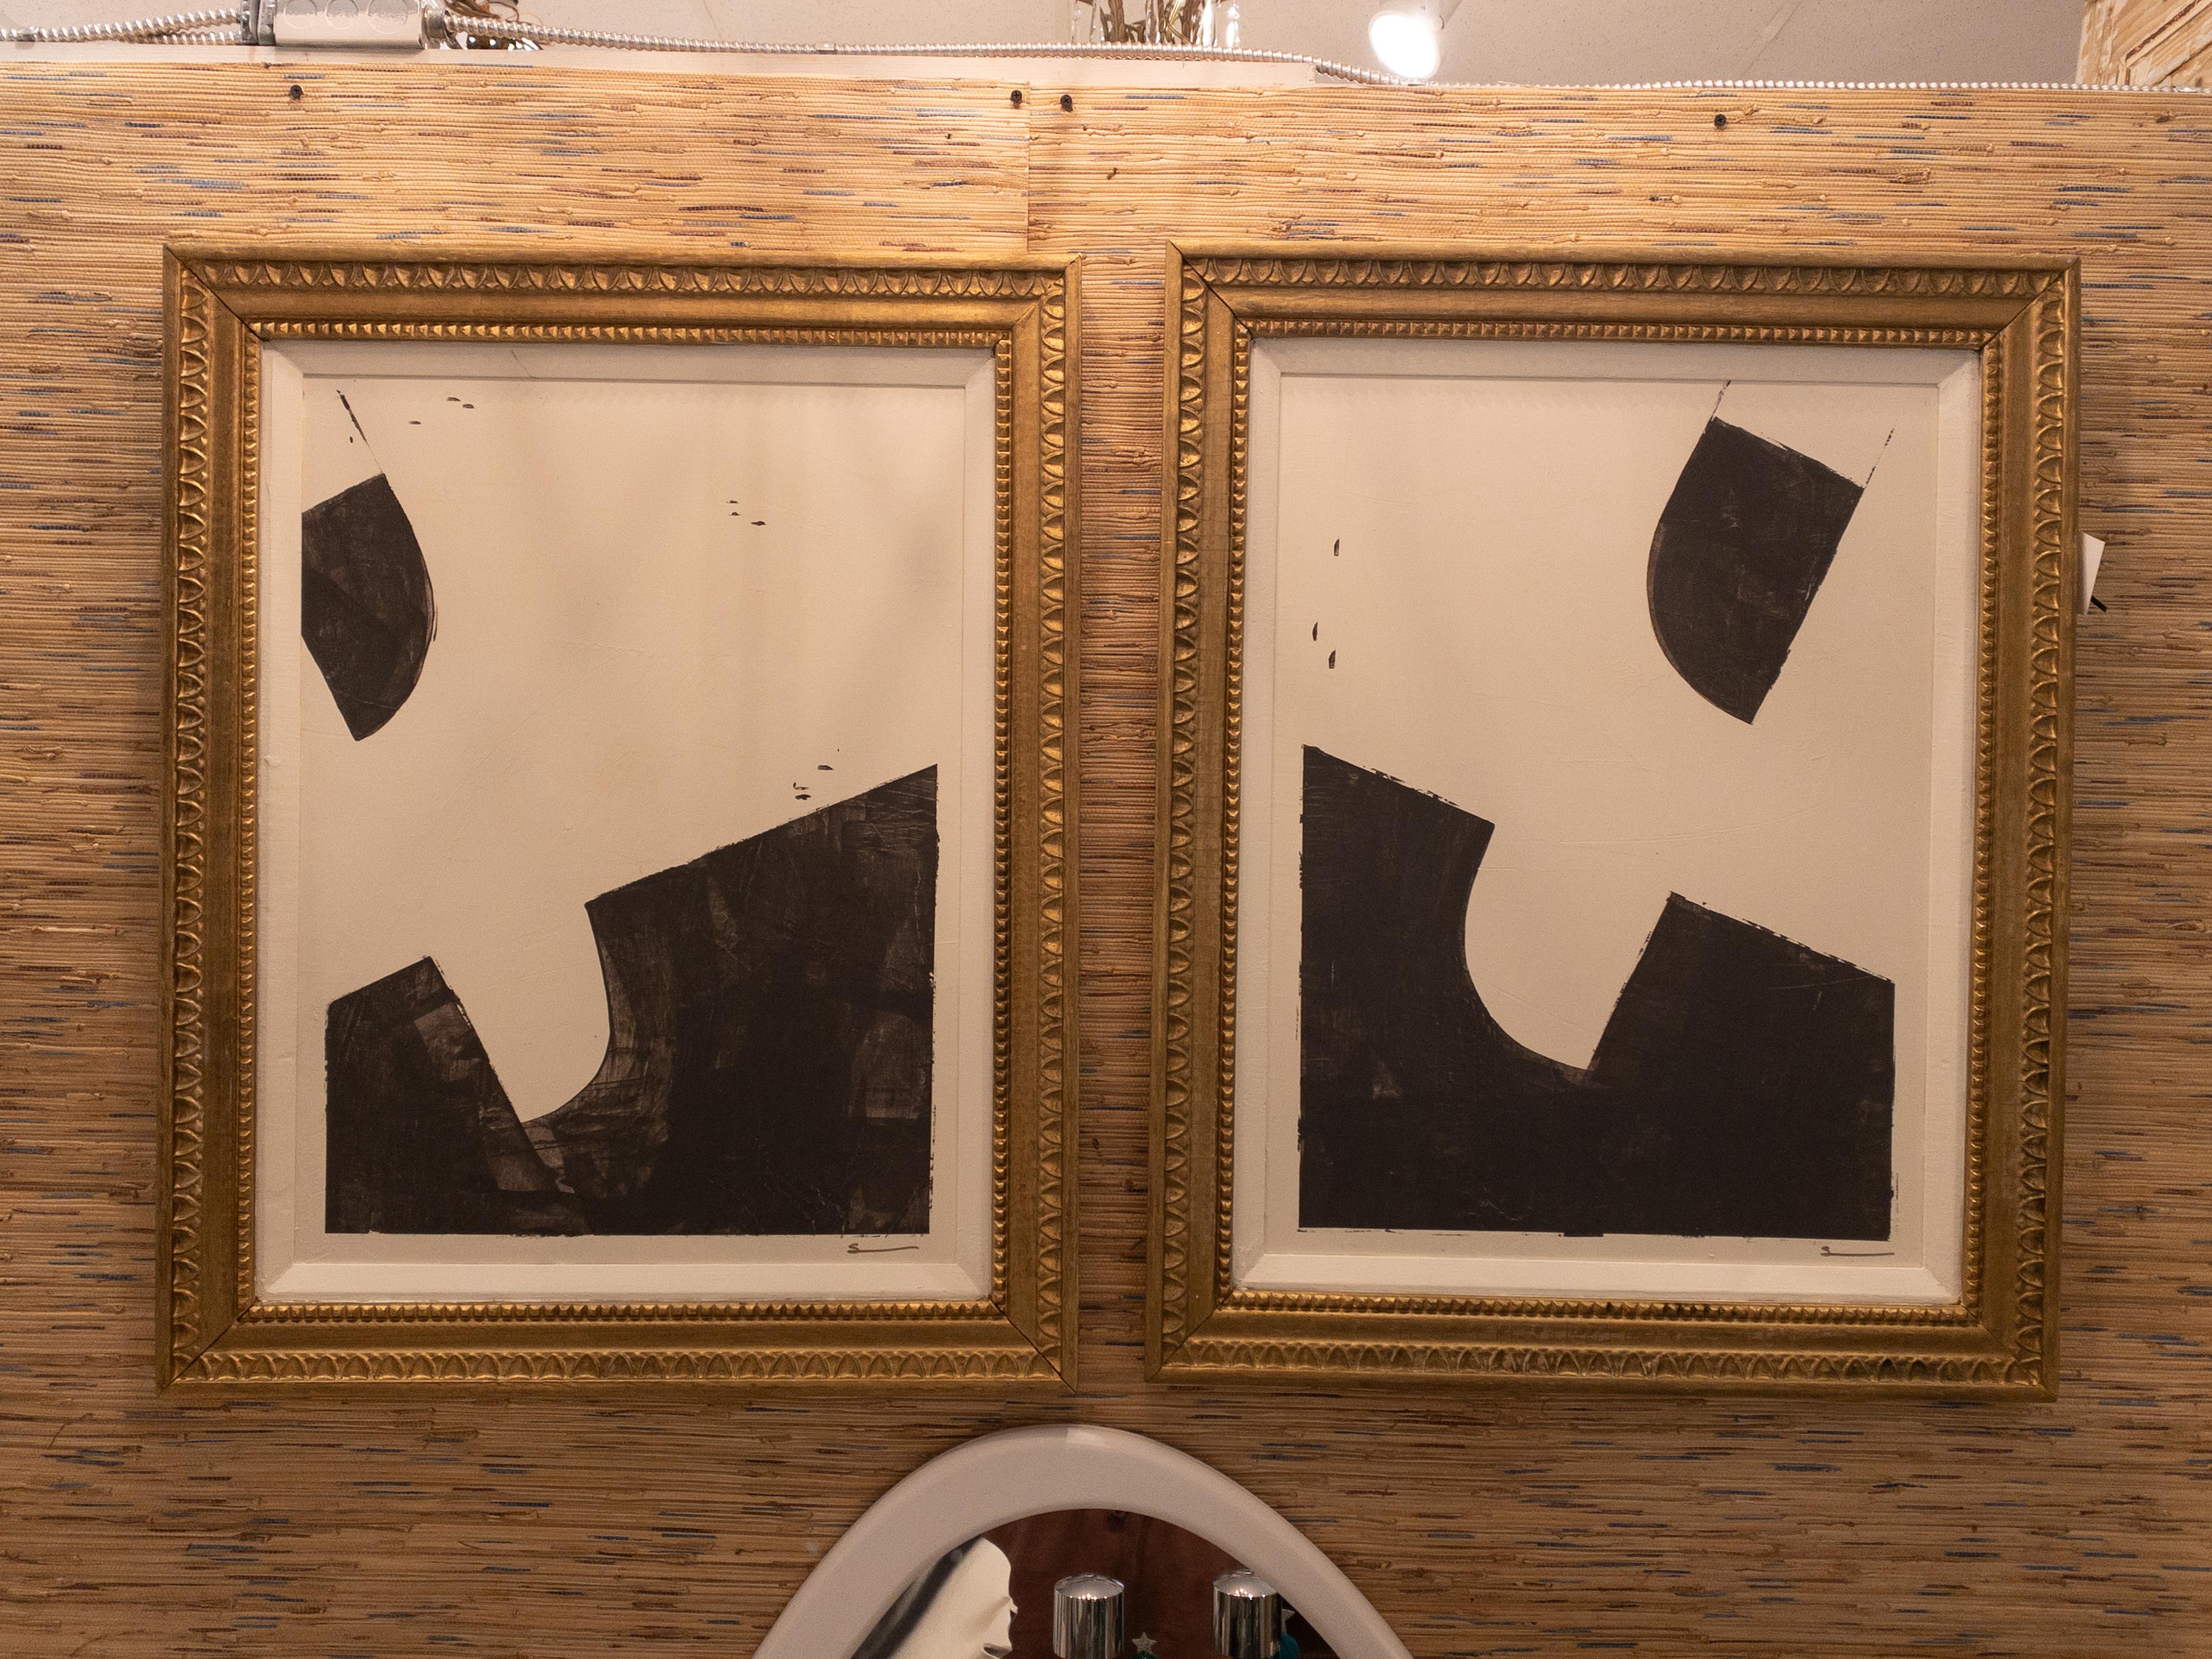 Peinture contemporaine originale en noir et blanc dans un cadre doré ancien, réalisée par Shannon Weir, une artiste de renom basée à Houston, au Texas. La maîtrise de Whiting se déploie dans cette symphonie monochromatique où les contrastes